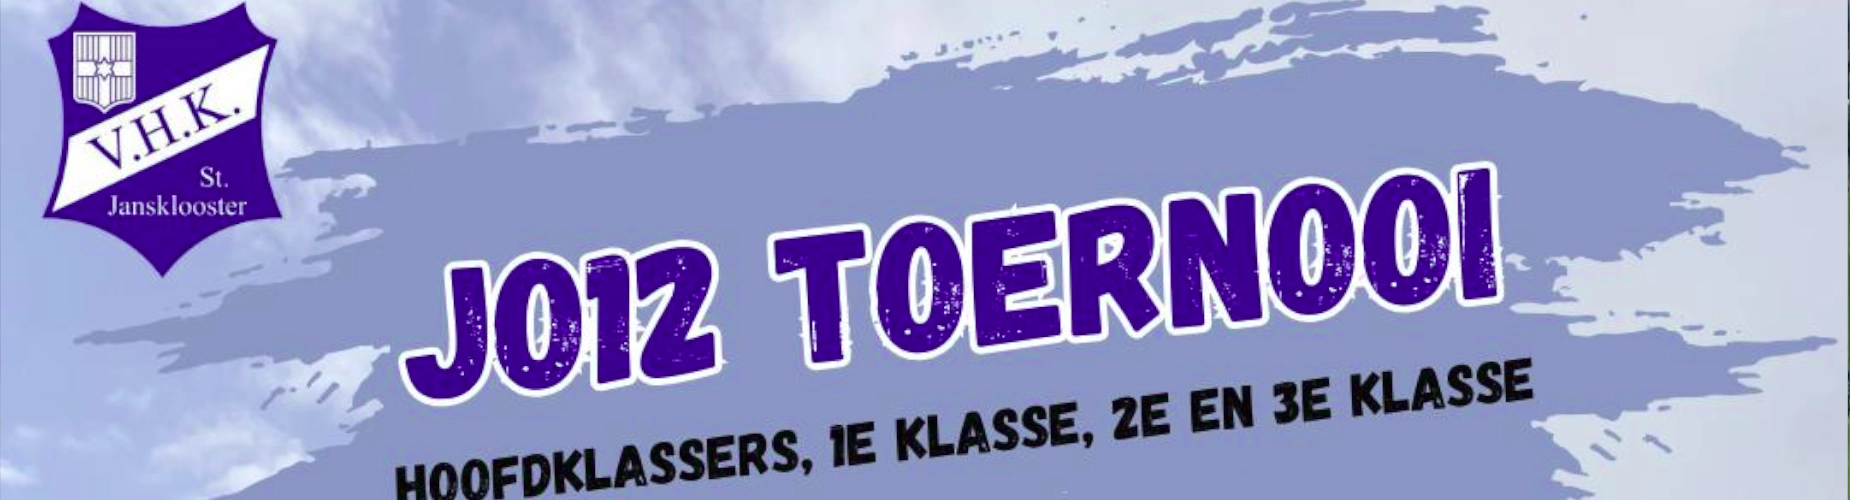 Banner - JO12 Toernooi - VHK - Sint Jansklooster